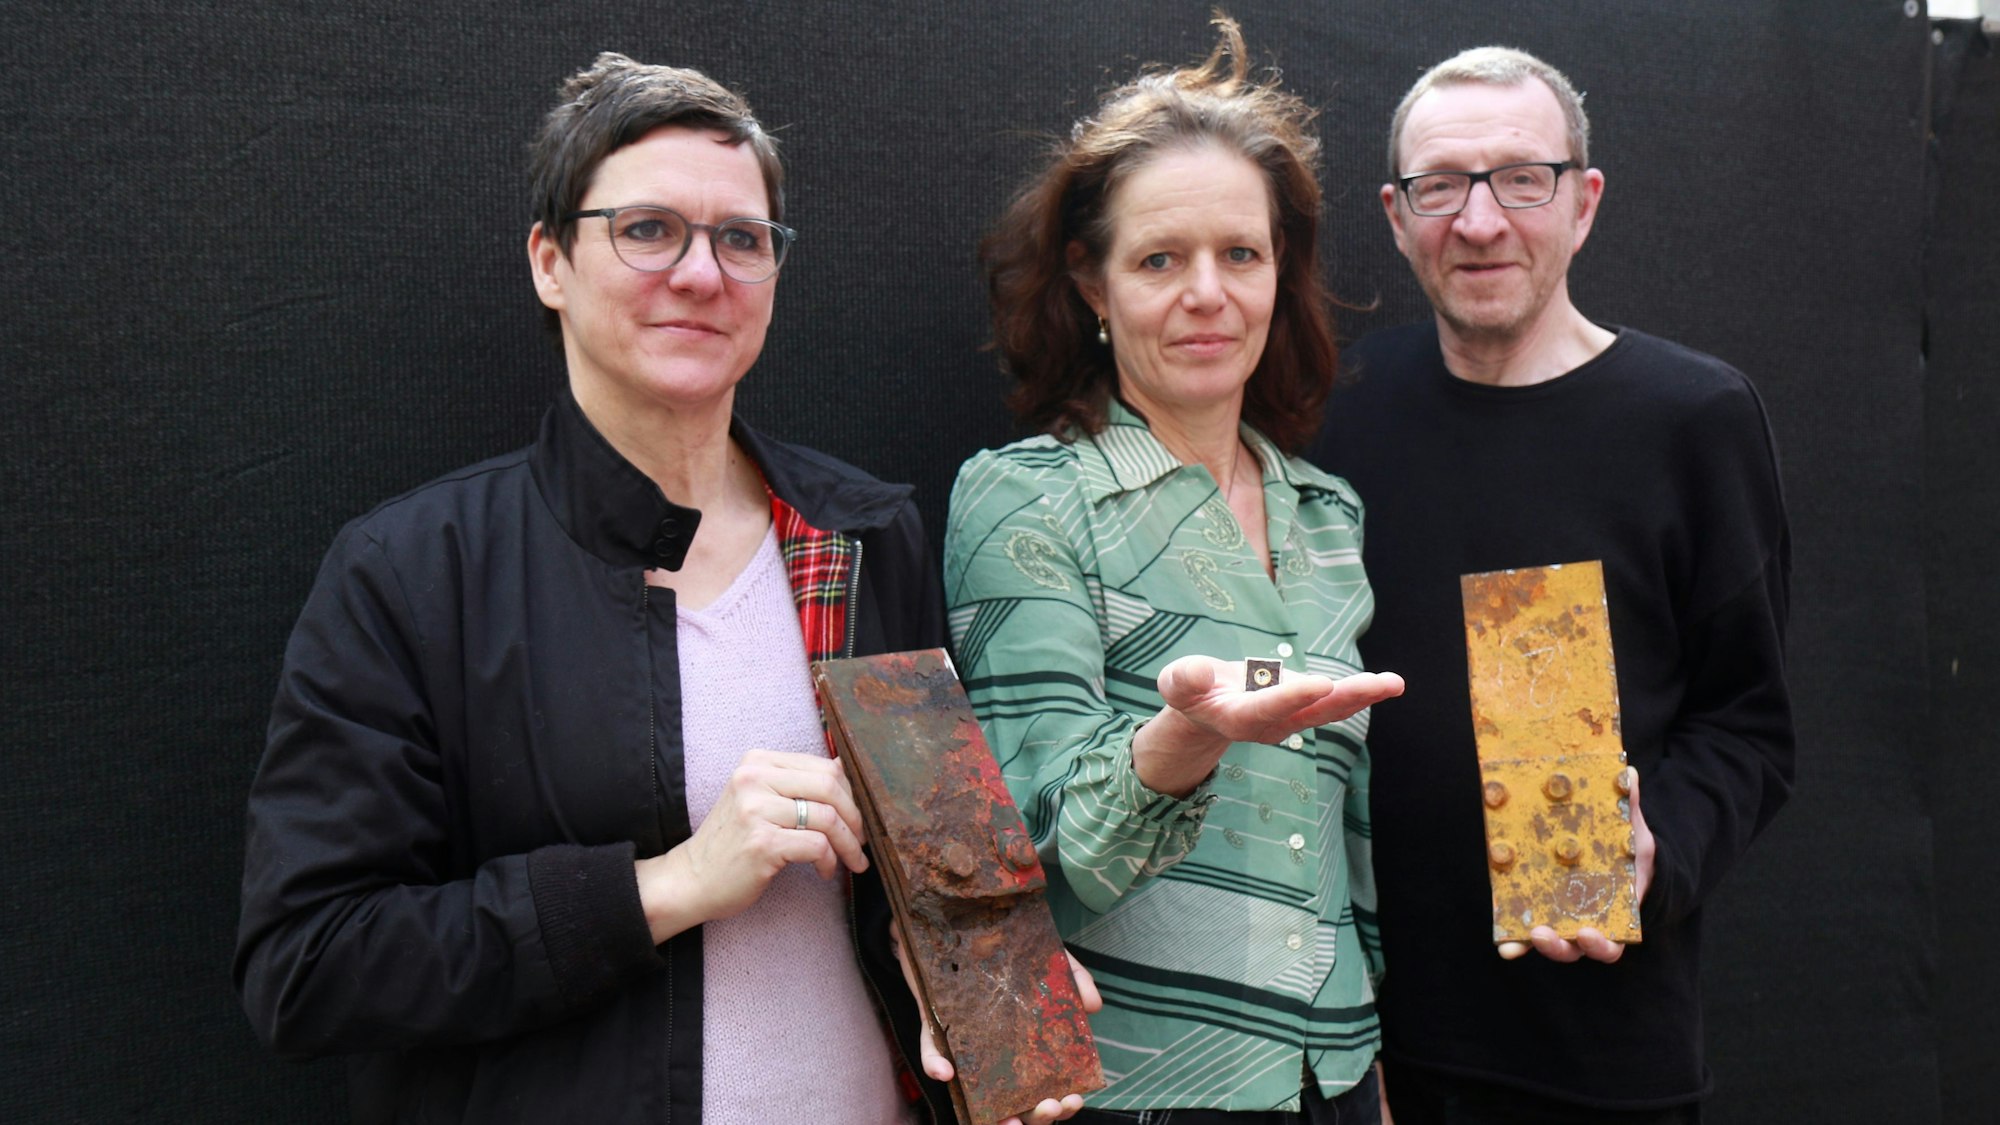 Zu sehen sind die Künstlerinnen und Künstler Ines Lang, Bettina Schön und Rupert Franzen (v.l.) mit Kumnstwerken.